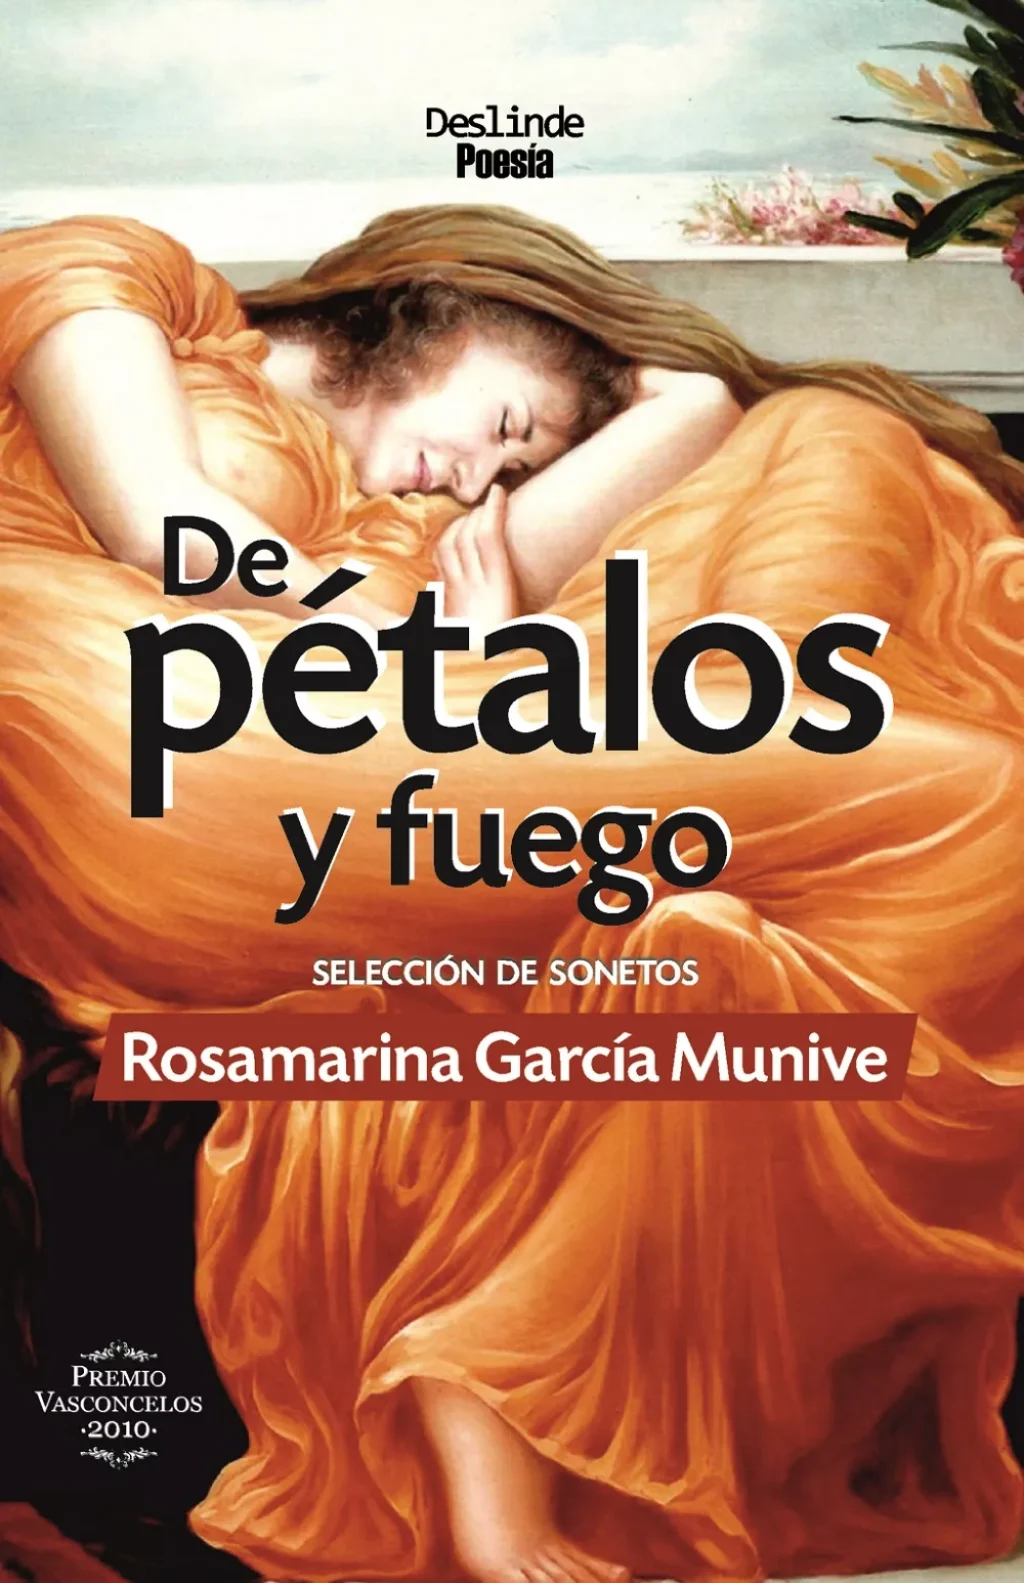 Cubierta del libro "De pétalos y fuego" (Ed. Deslinde, Madrid, 2021), de la poeta peruana Rosamarina García Munive.